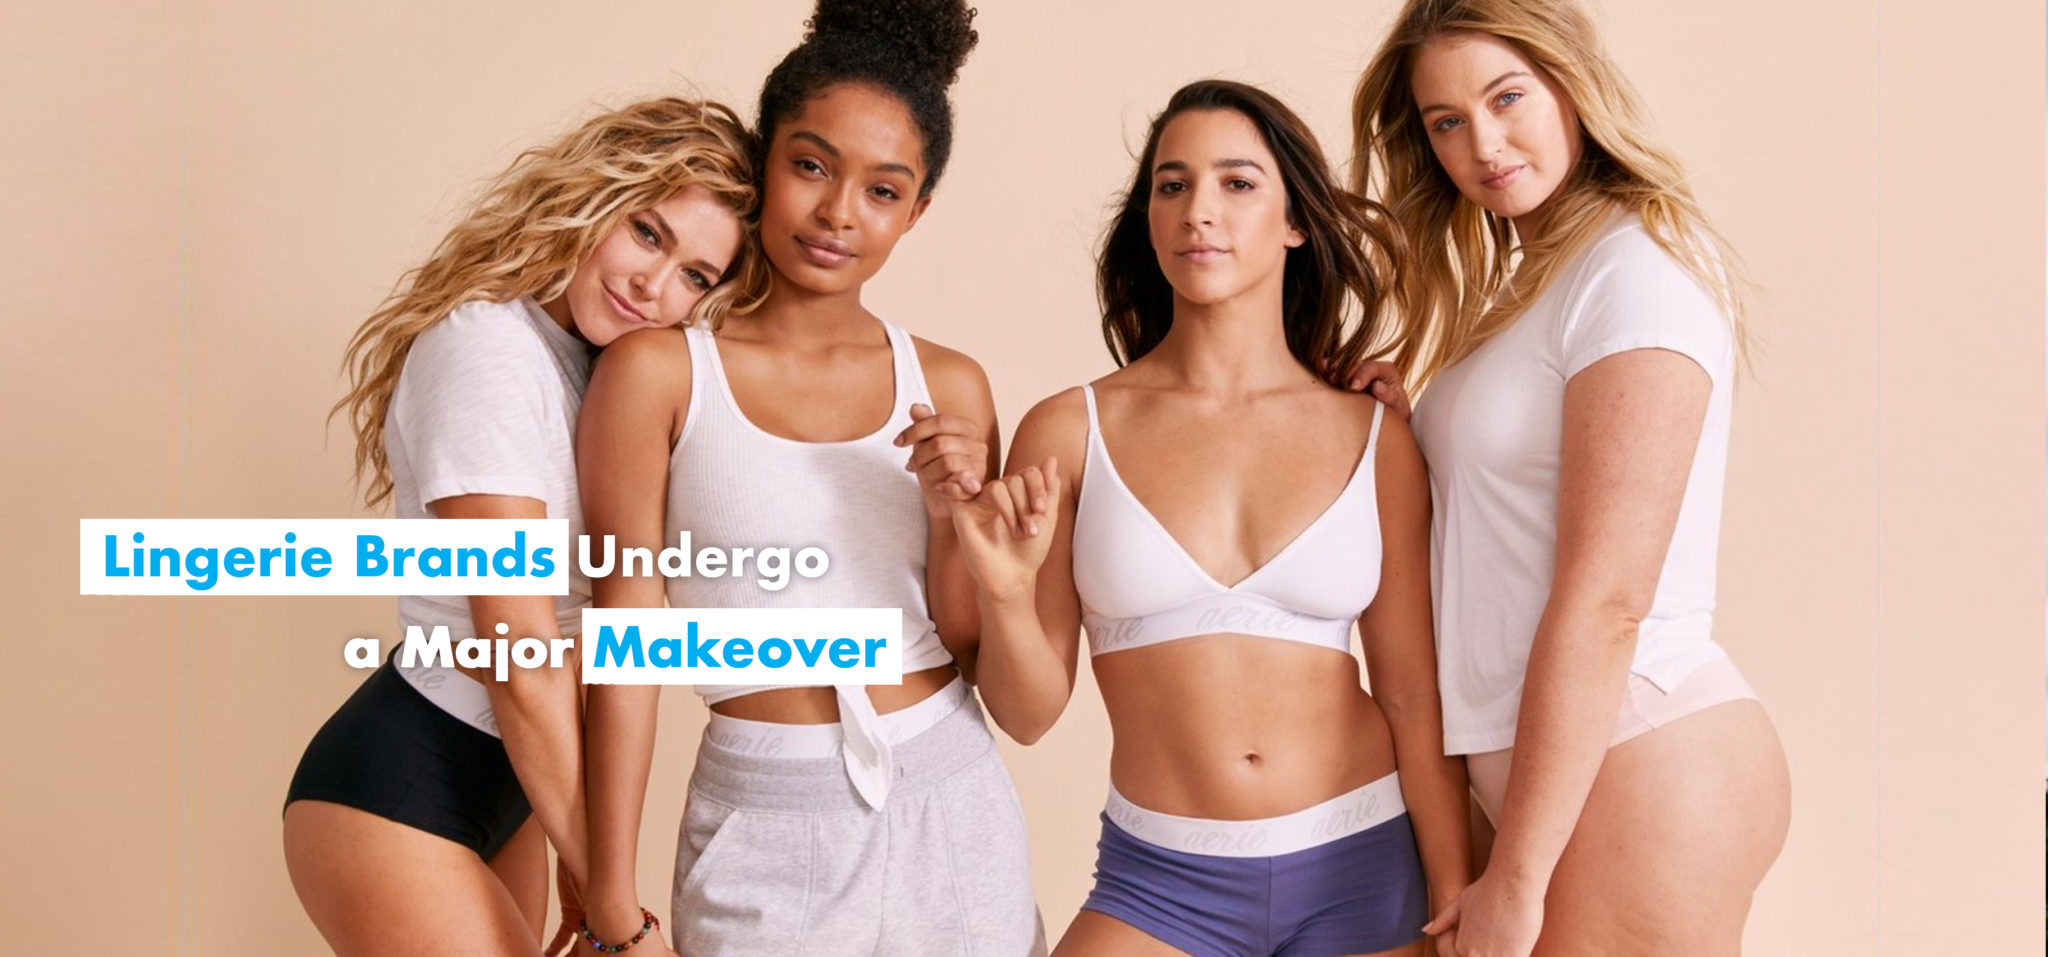 Brand design: Can underwear have charisma?, Marketing